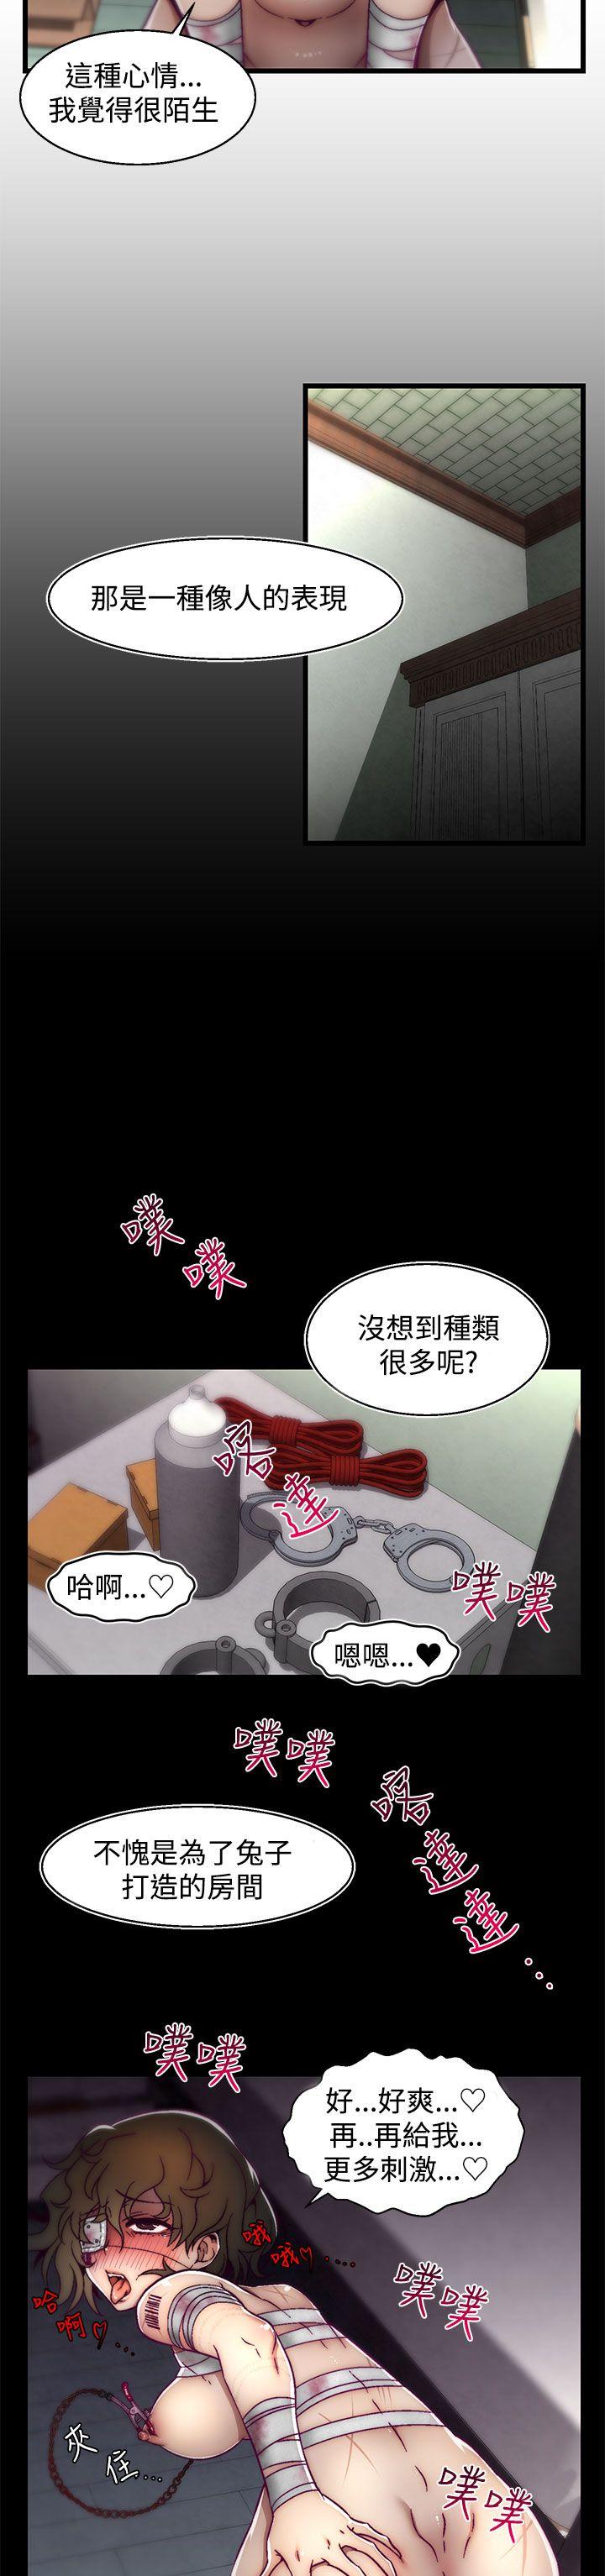 韩国污漫画 啪啪啪調教所 第5话(第2季) 17